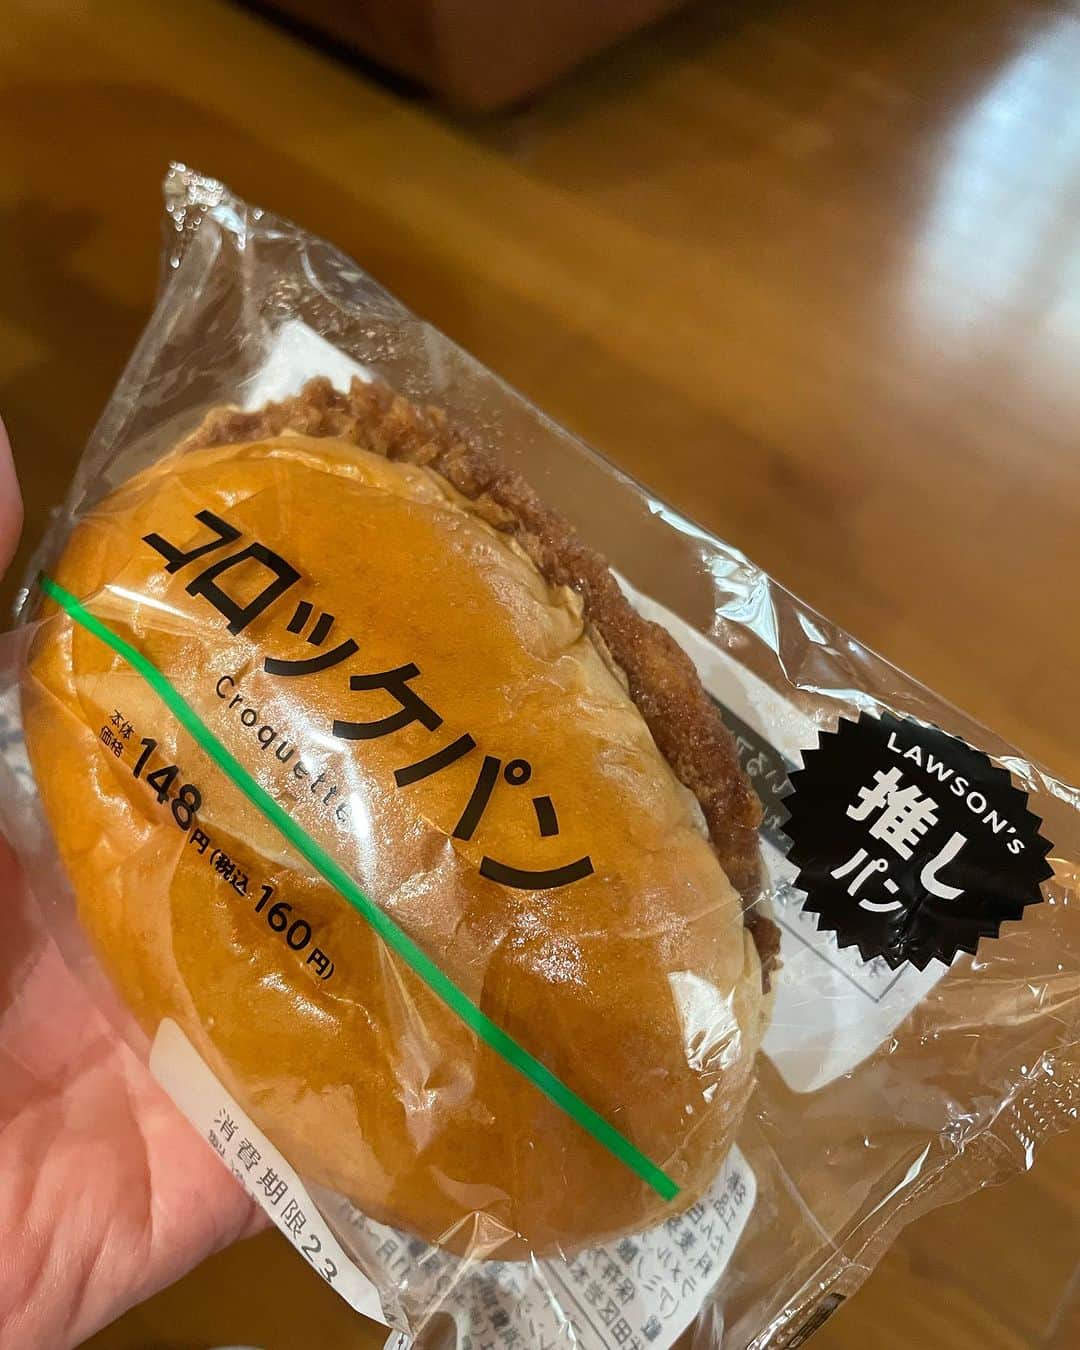 飯島直子さんのインスタグラム写真 - (飯島直子Instagram)「こんばんは^ - ^♪  日中は暑かったですね  食べ損ねたごはんを取り戻そうとハンバーグライスを頼みましたが、足りませんでした  おしゃれな店はおしゃれな量です  帰りにコロッケパン買いました  財布にお金が入ってなく ビビりました^ - ^  10.11日のへんじすこしです＾＾  shiho54才誕生日おめでとう♪ 感謝のキモチを忘れずに、日々を楽しく…だね^ - ^ステキな一年になりますように♪  masayuki誕生日おめでとう♪ 俺は二枚目♪横浜の街はいいね いつもありがとう^ - ^良い一年になりますように♪  めみ誕生日おめでとう♪ スナックママ20年！スゴイね♪今夜は大盛り上がりだ♪ カラダに気をつけ頑張ってね♪ ステキな一年になりますように♪  ayanomaru31才誕生日おめでとう♪家族のたまにトラック走らせる！長距離安全運転で頑張ってね！良い一年になりますように♪  お母さん白内障手術無事終わってよかった^ - ^わたしの周りにもいるよ、７４才まだまだ若い！元気に長生きしてもらおうね、ks19770327！  サンタ♪  モミスリ作業お疲れさま！ 姉妹、お互い家庭を持つとズレを感じるときもあるけど仕方のないこと^ ^今度会ったとき 2人でゆっくり話してみてね 根本はなにも変わってないことに気づくとおもうから^_^ かわいい妹誕生日おめでとう♪ としこ！  肺がんに…不安だよね…しっかり治療しようね！がんばろう！ naokiᕦ(ò_óˇ)ᕤ  寝不足マー坊！居眠ないでね！  愛犬のインスリン毎日大変だけど頑張ってね^ - ^インスタライブまたやるね^ ^hime♪  つみき♪  婿取り娘は血の涙… 板挟みで逃げ場なくクタクタ… 婿取りは大変と聞くね… 一度開き直って、文句があるなら 互いで解決してくださいと 言ってみたらどうかな… 家族になったんだからあなたが全部背負う必要はないとおもう 勇気だしてみて！ohisama！  お母さん連れてスーパー行けたかな^ - ^？喜んでくれるね♪ クミコマ！  伸之！お疲れさま^ - ^  ミッシェル育子♪  いづみまた参加してね♪  広島の幸！広島弁いいね♪  美穂子♪  ネガティブ飛んでけーー！  コロナで38度！大事にしてね ribo！  菜々子♪  肋骨骨折3本はキツすぎる！ 大事にしてね！yuka！  そのみ♪  エリ、大阪からお帰り！ 友だちのお母さん大事にしてあげてね^ - ^体調気をつけて！  今日から5連勤！頑張るな〜 kuu！  memezoお父さんは十分満足してるとおもうよ^ - ^ 今日も明日もがんばろうね！  みか！おかゆさん食べれるようになってよかった^ - ^ しっかり休んで、しっかり食べて元気に帰ってきてね、待ってるよ^ - ^  乳がん初期の可能性…大丈夫だよ、検査してわるいとこあったら、しっかり治そうね 祈ってるᕦ(ò_óˇ)ᕤyouli！  ゆき子ありがとう^ - ^  サンディサンディ♪  マリー♪  まり♪  ミイ♪  ともこ！そんなこと気にすることないよ^ - ^2度でも3度でも！ラーメン辛いけどおいしいよ^ - ^  あ、今朝のバックはニトリです  ポケットがいっぱいあって便利です^ - ^  今日も一日お疲れさまでした  今夜は早寝できそうです  みんなもゆっくり眠てね  おやすみなさい( ´ ▽ ` )ﾉ♡  また明日♡♡」9月12日 20時46分 - naoko_iijima_705_official